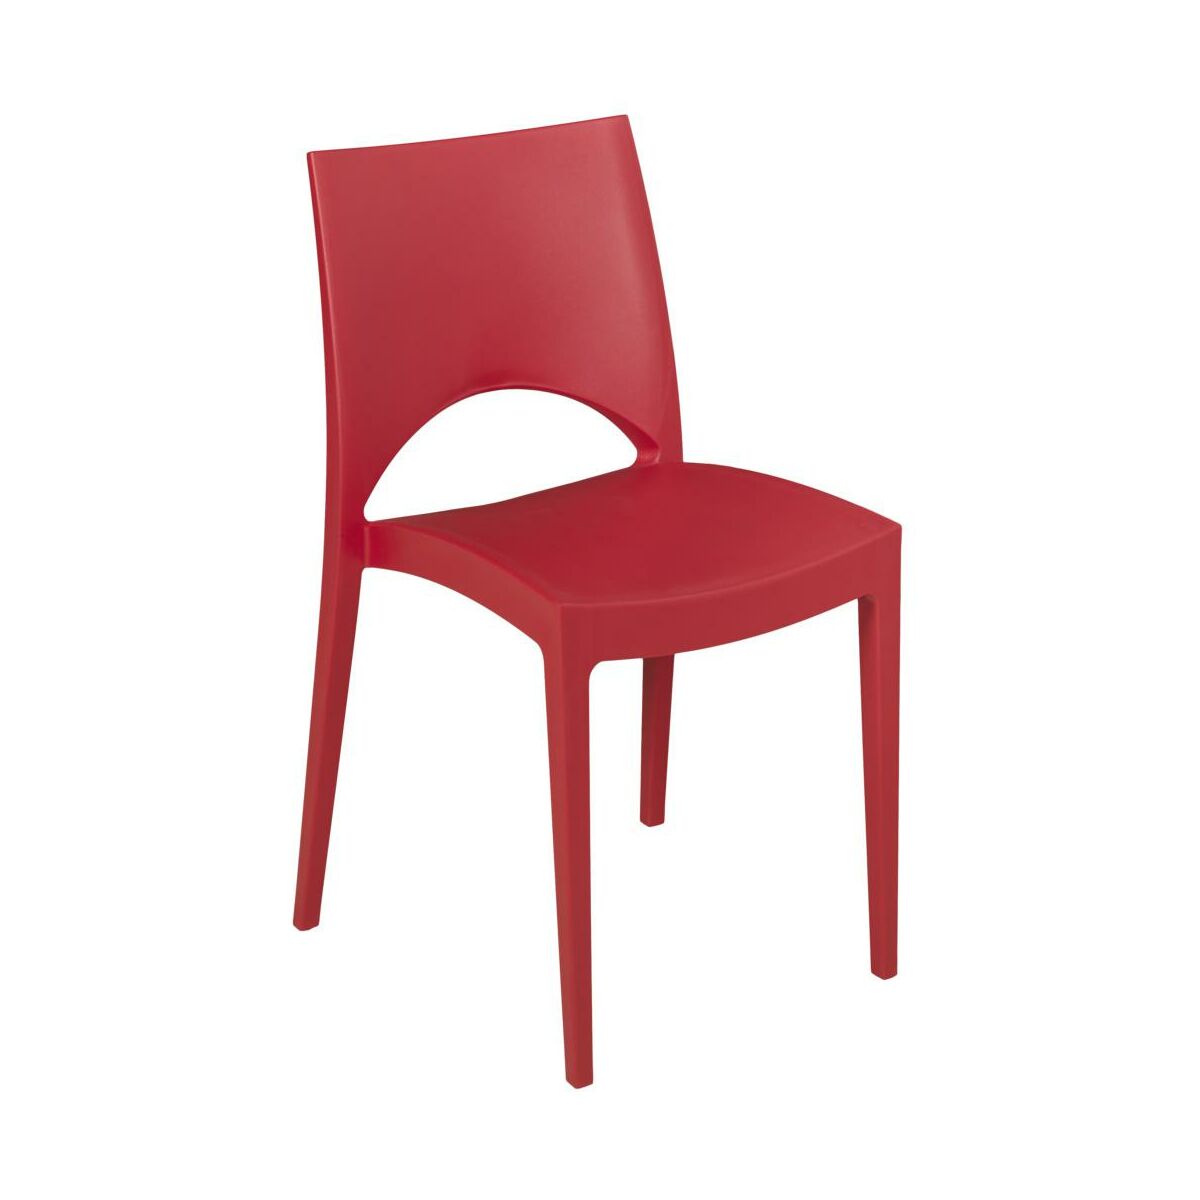 Krzeslo Ogrodowe Paris Plastikowe Czerwone Krzesla Fotele Lawki Ogrodowe W Atrakcyjnej Cenie W Sklepach Leroy Merlin